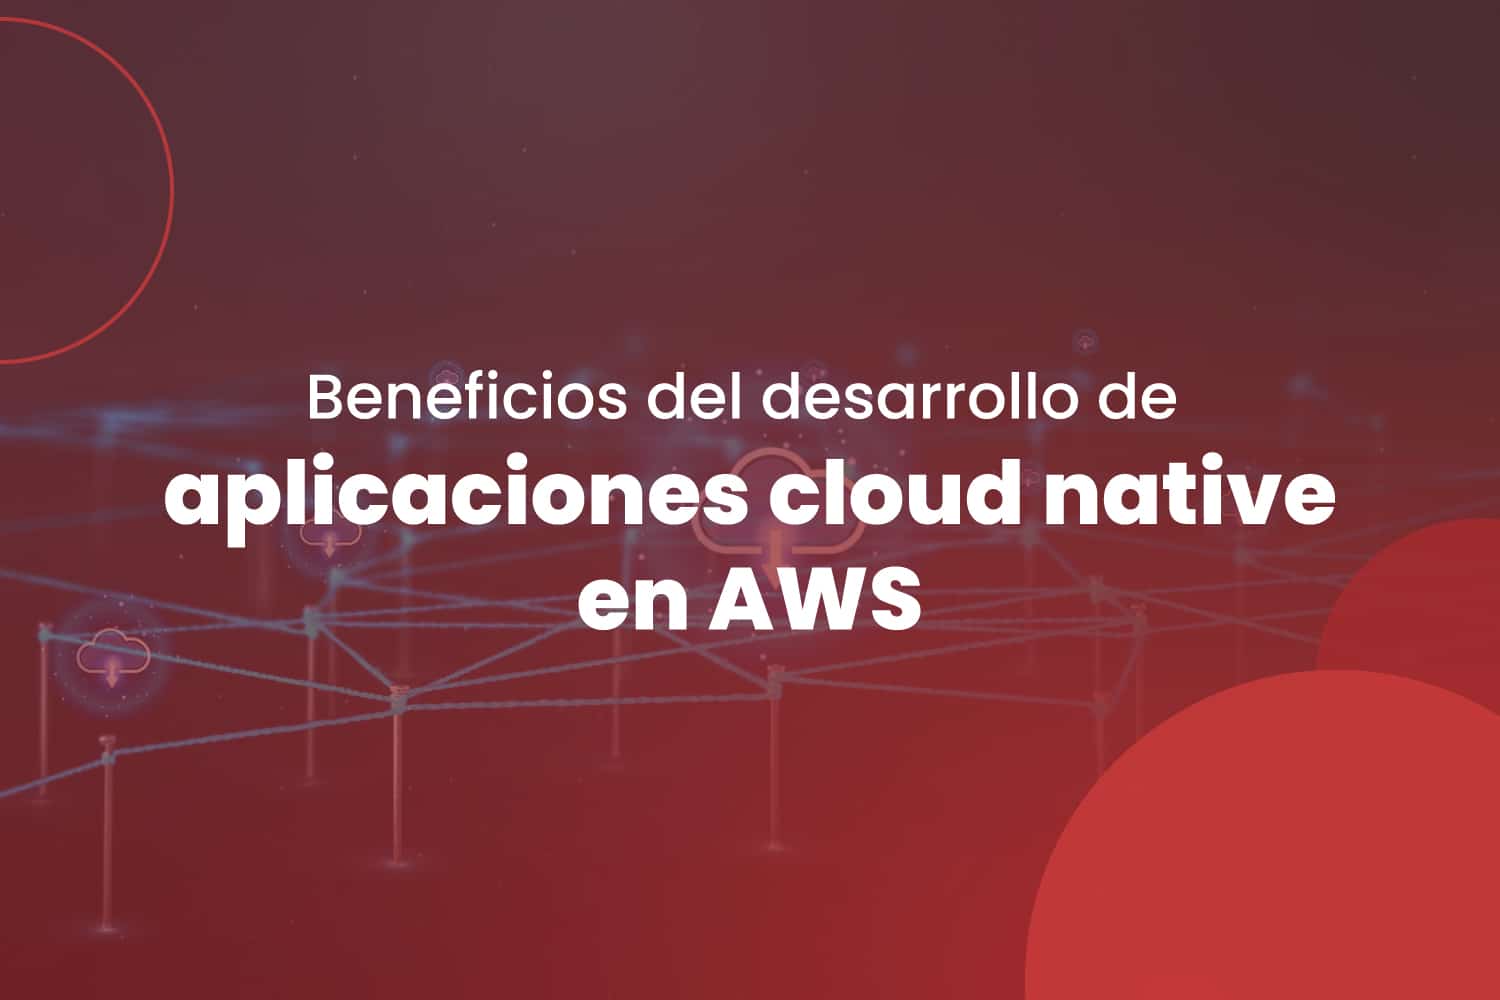 Beneficios del desarrollo de aplicaciones cloud native en AWS